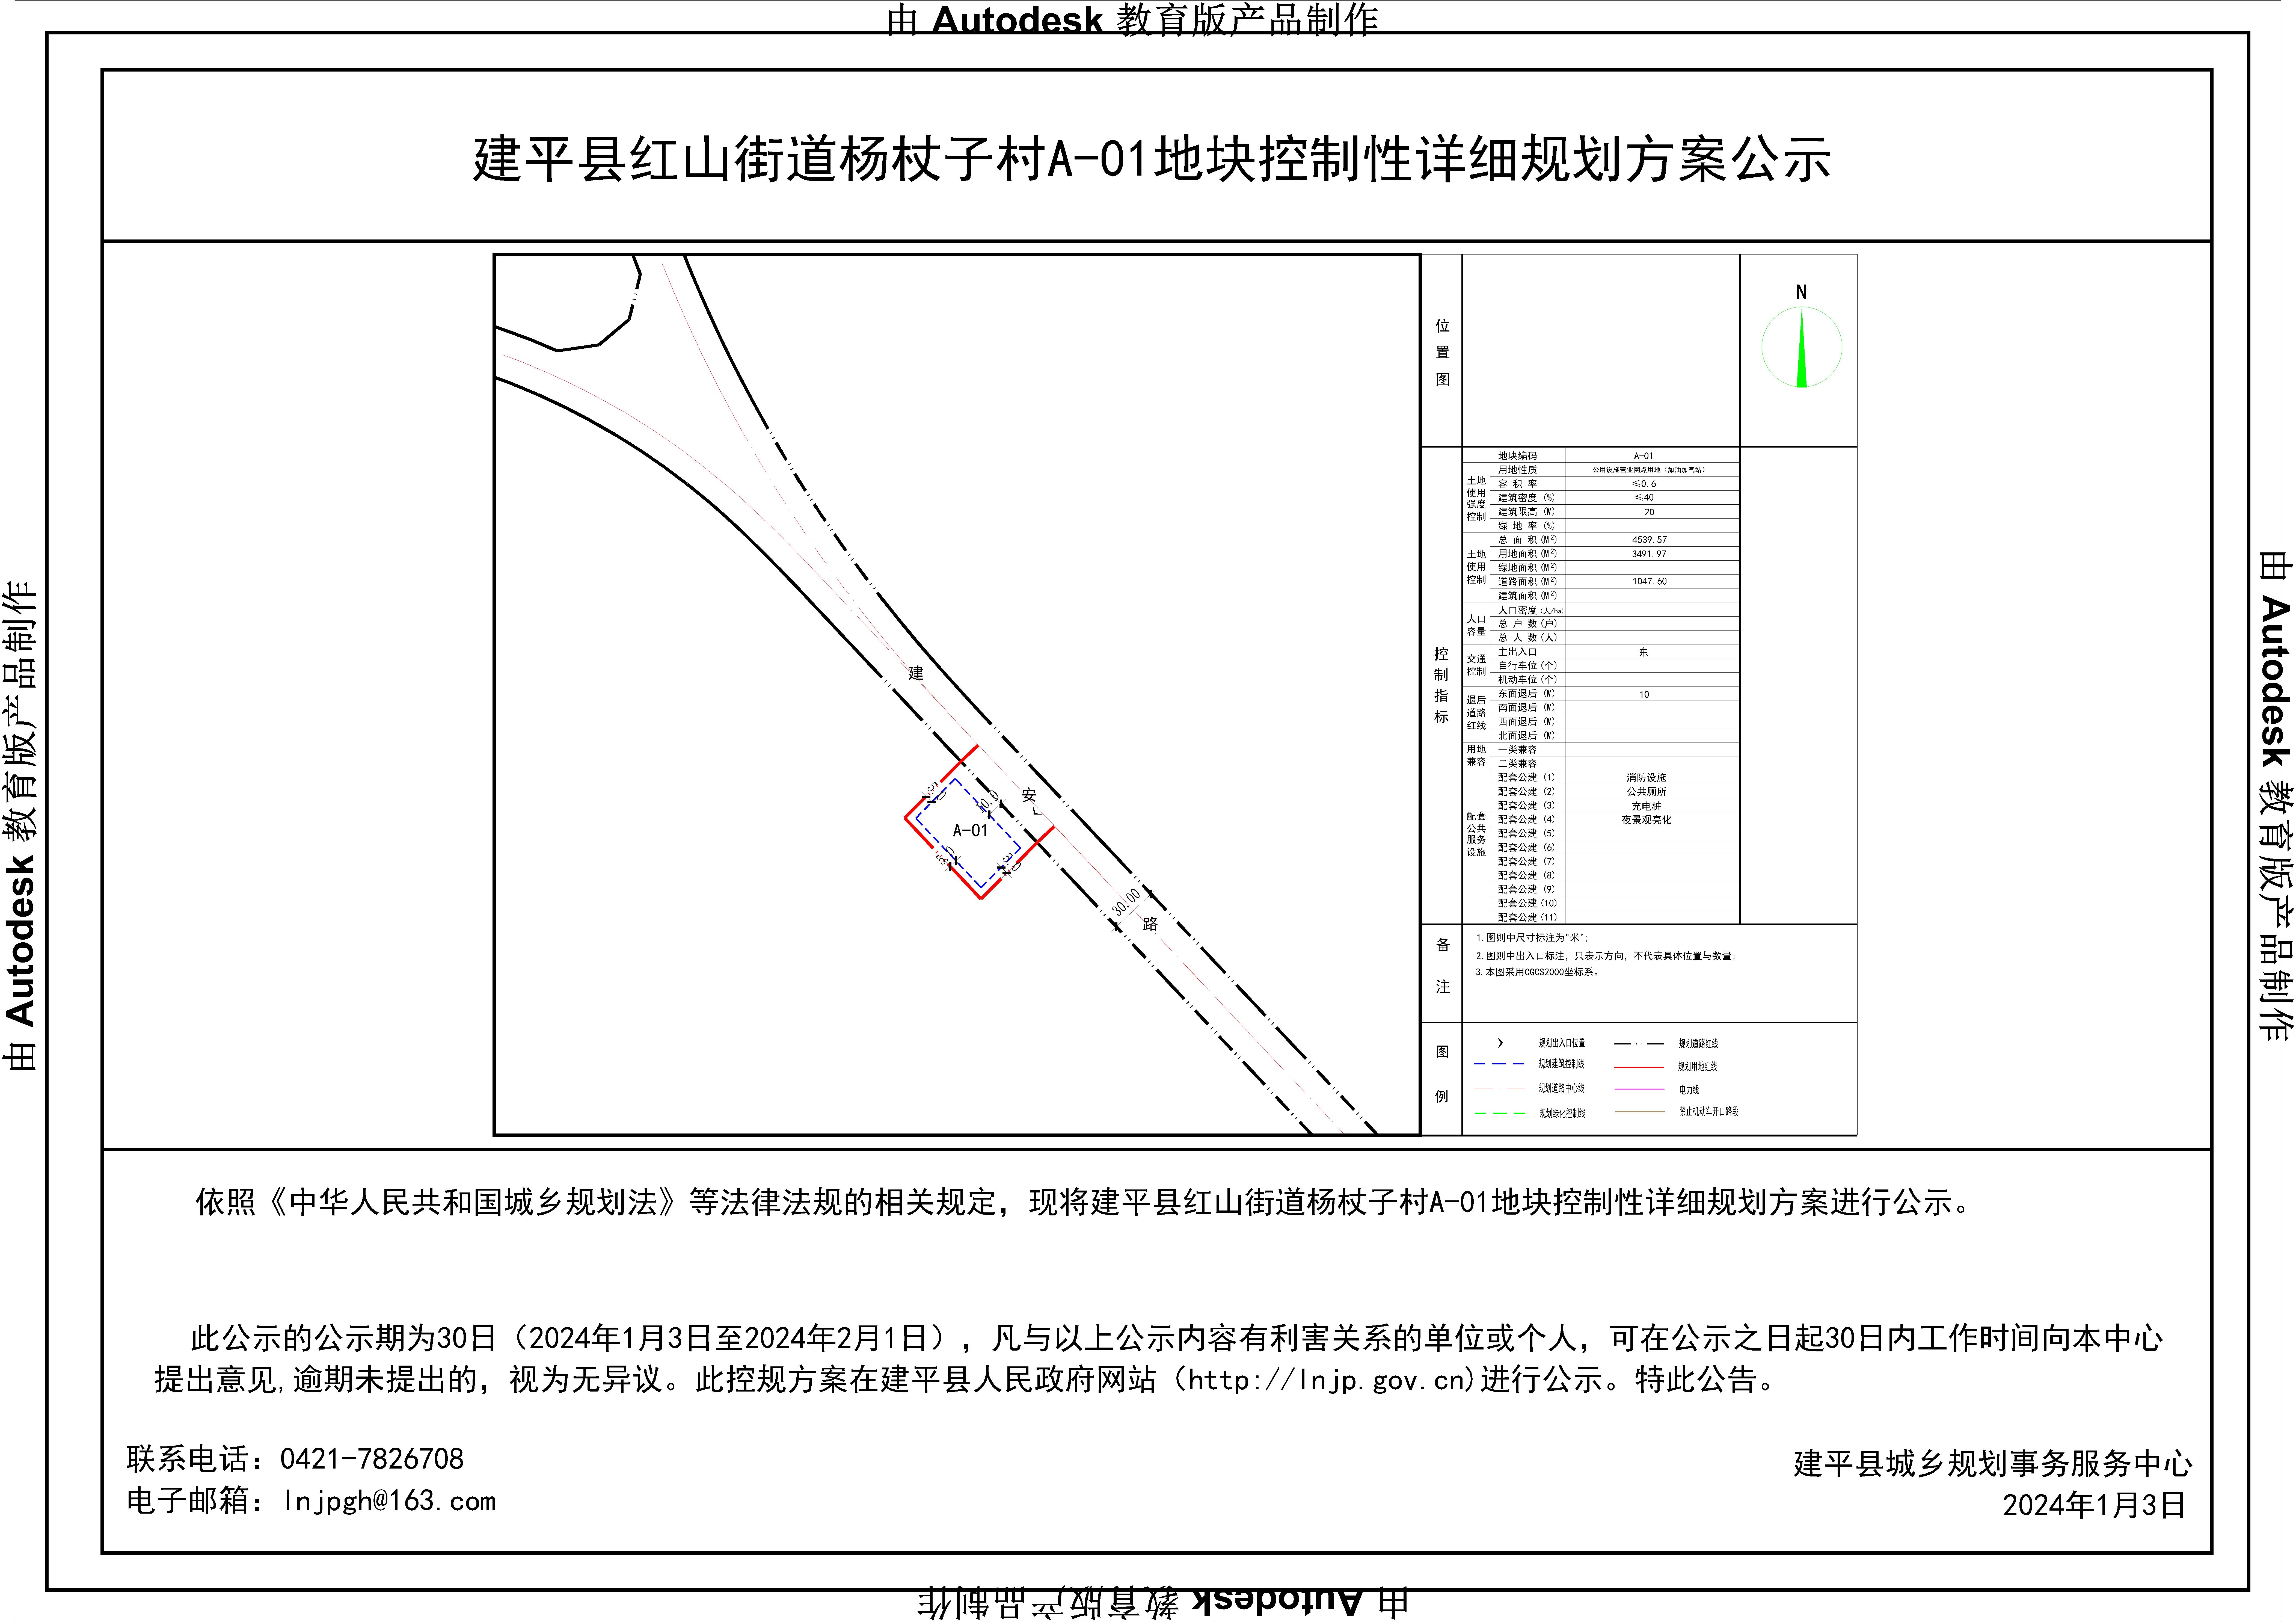 建平县红山街道杨杖子村A-01地块控制性详细规划分图图则-Model.jpg